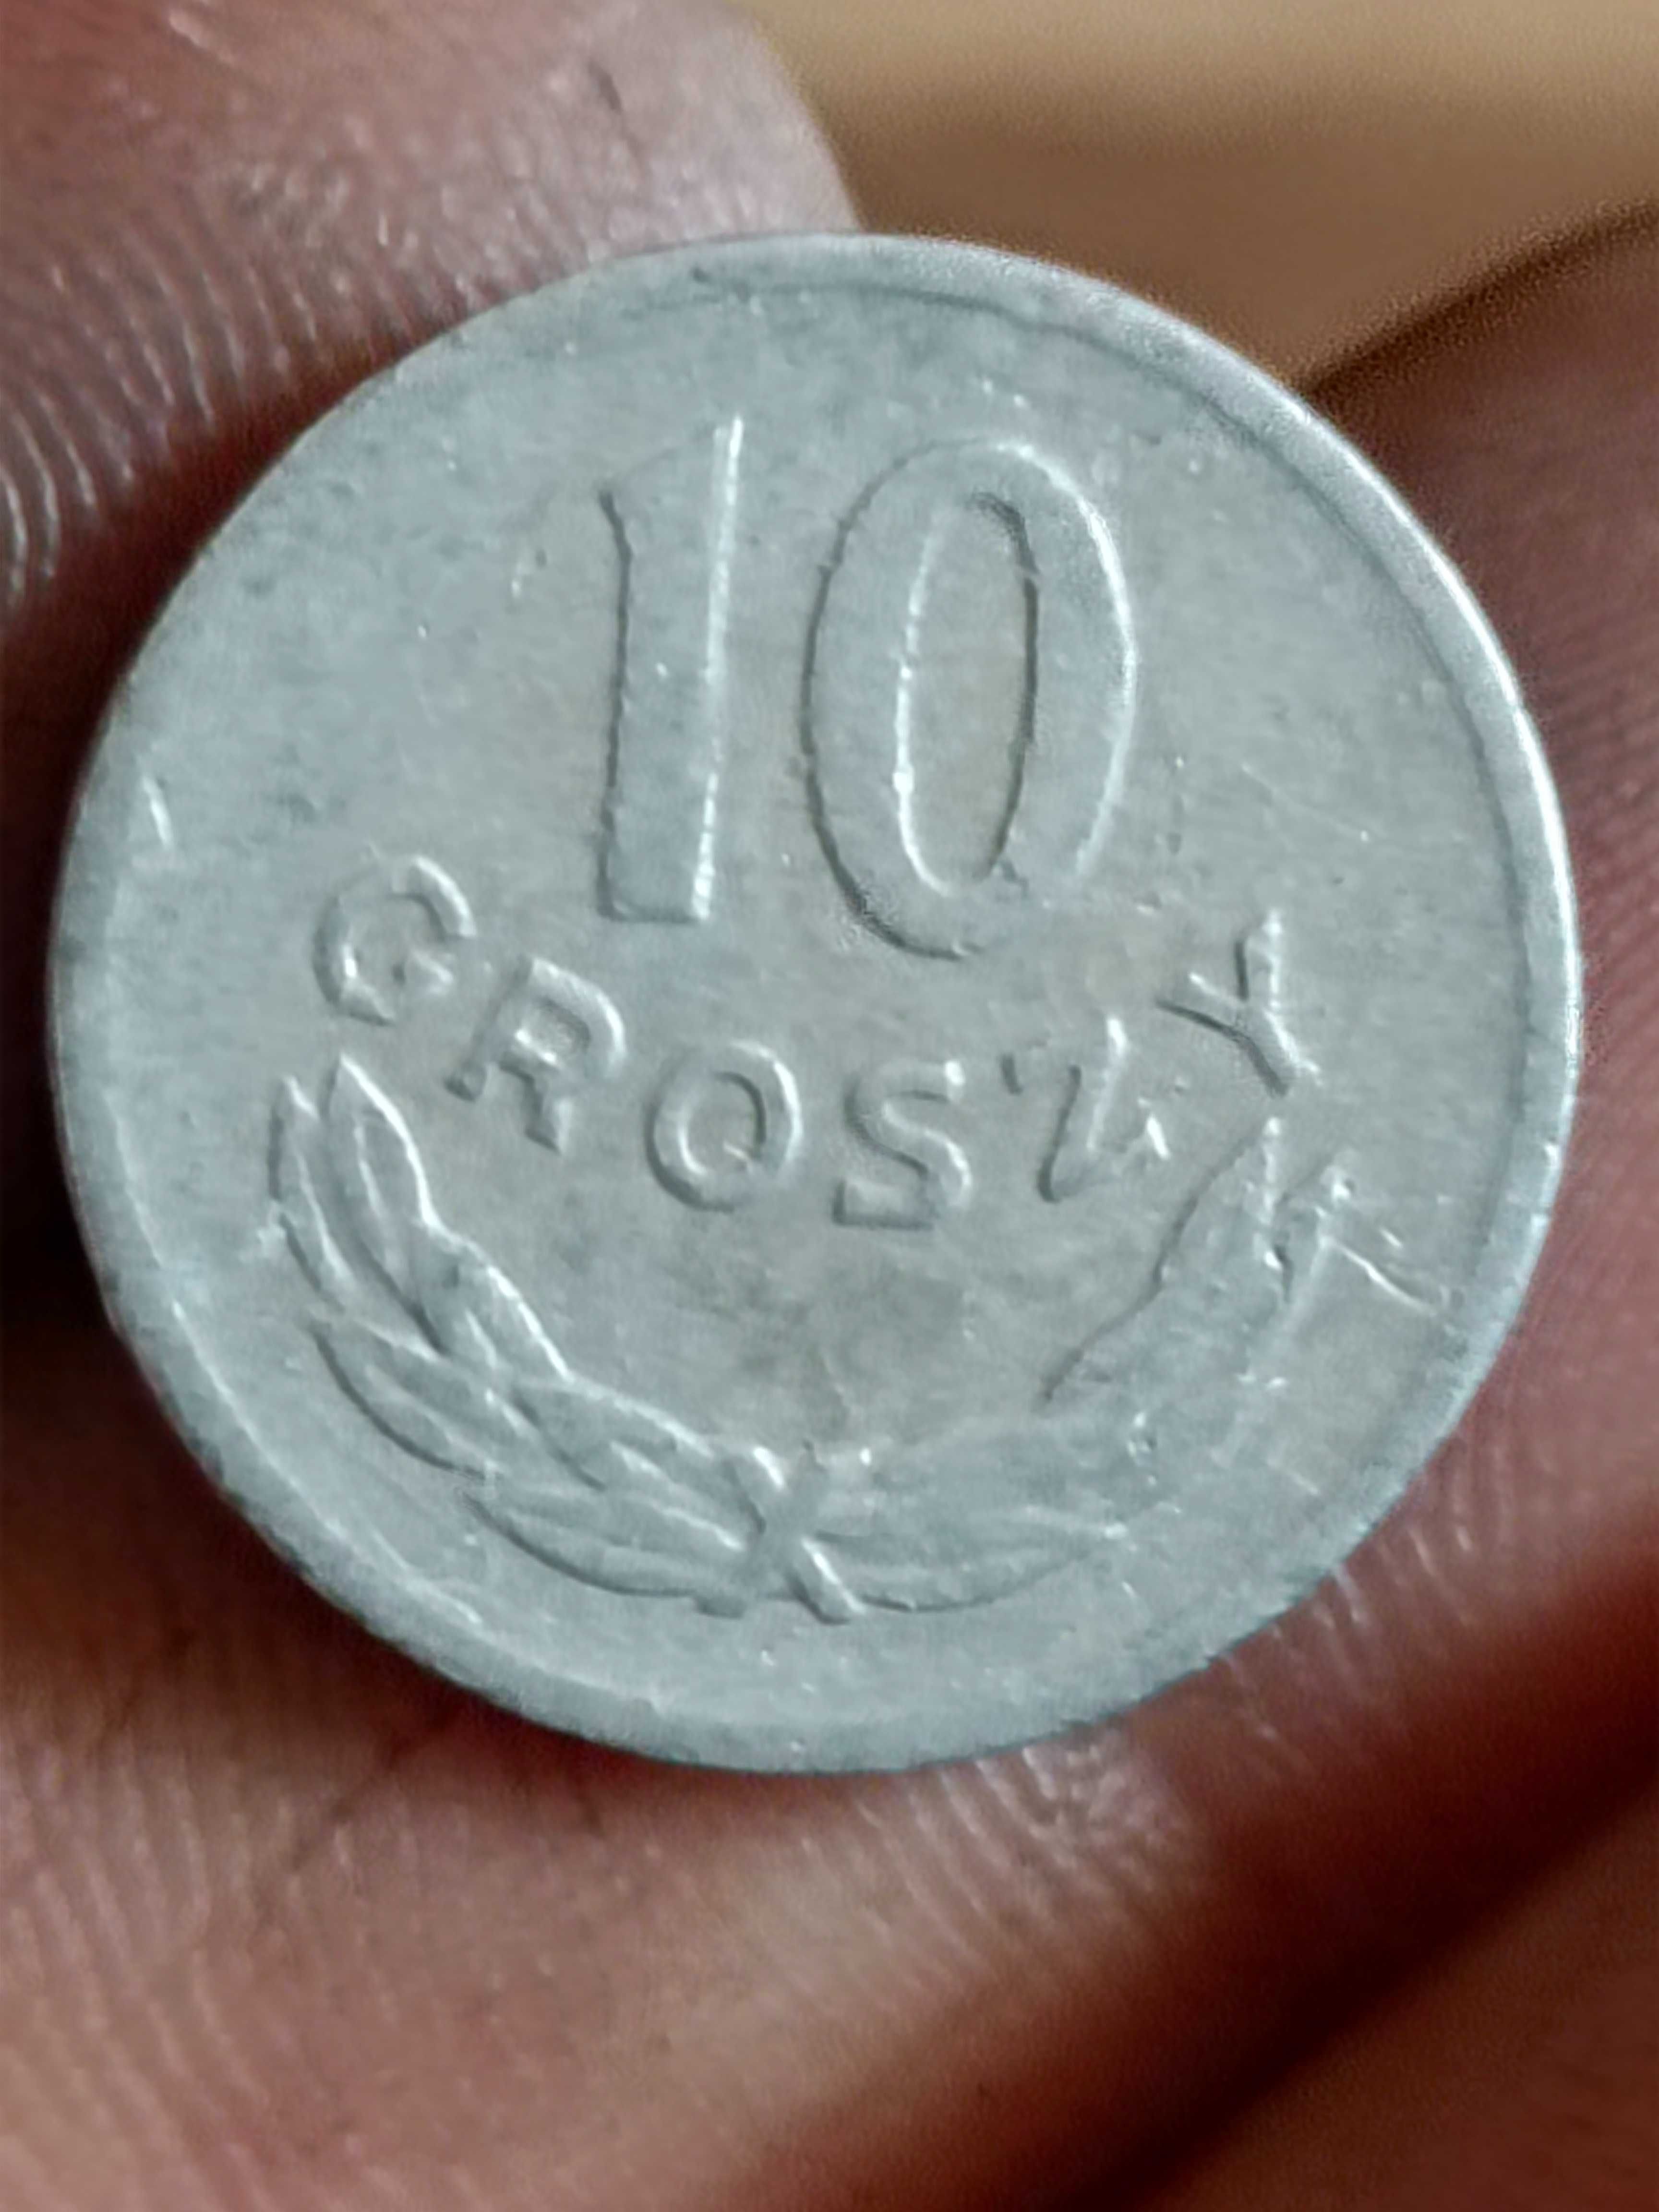 Sprzedam monete 10 groszy 1968